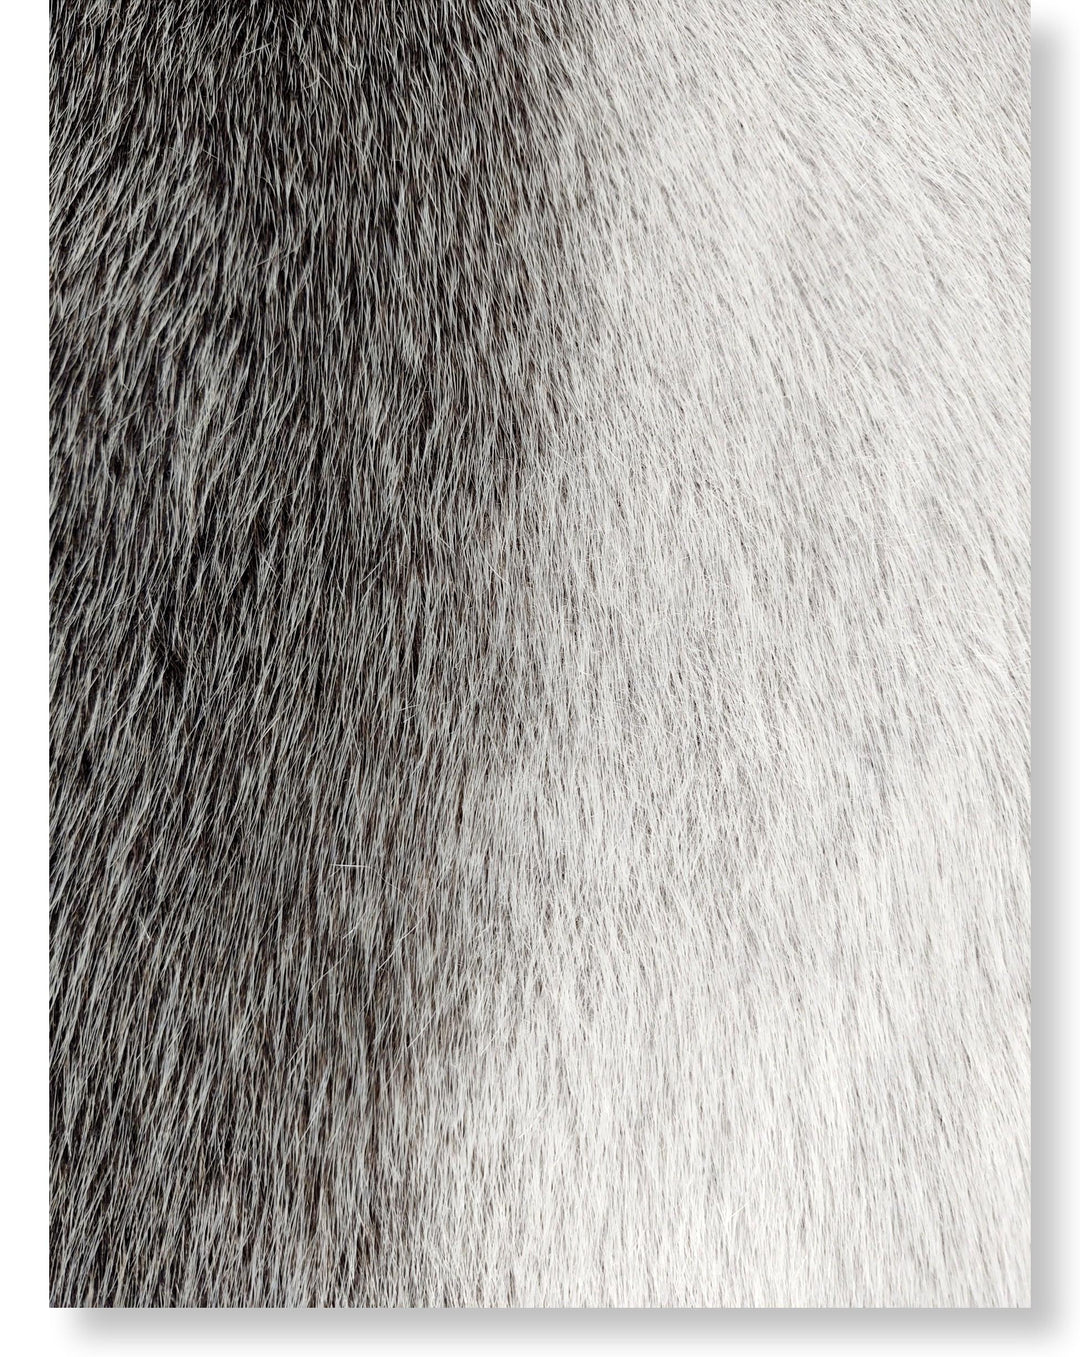 Grønlandsk Blueback sæl skind